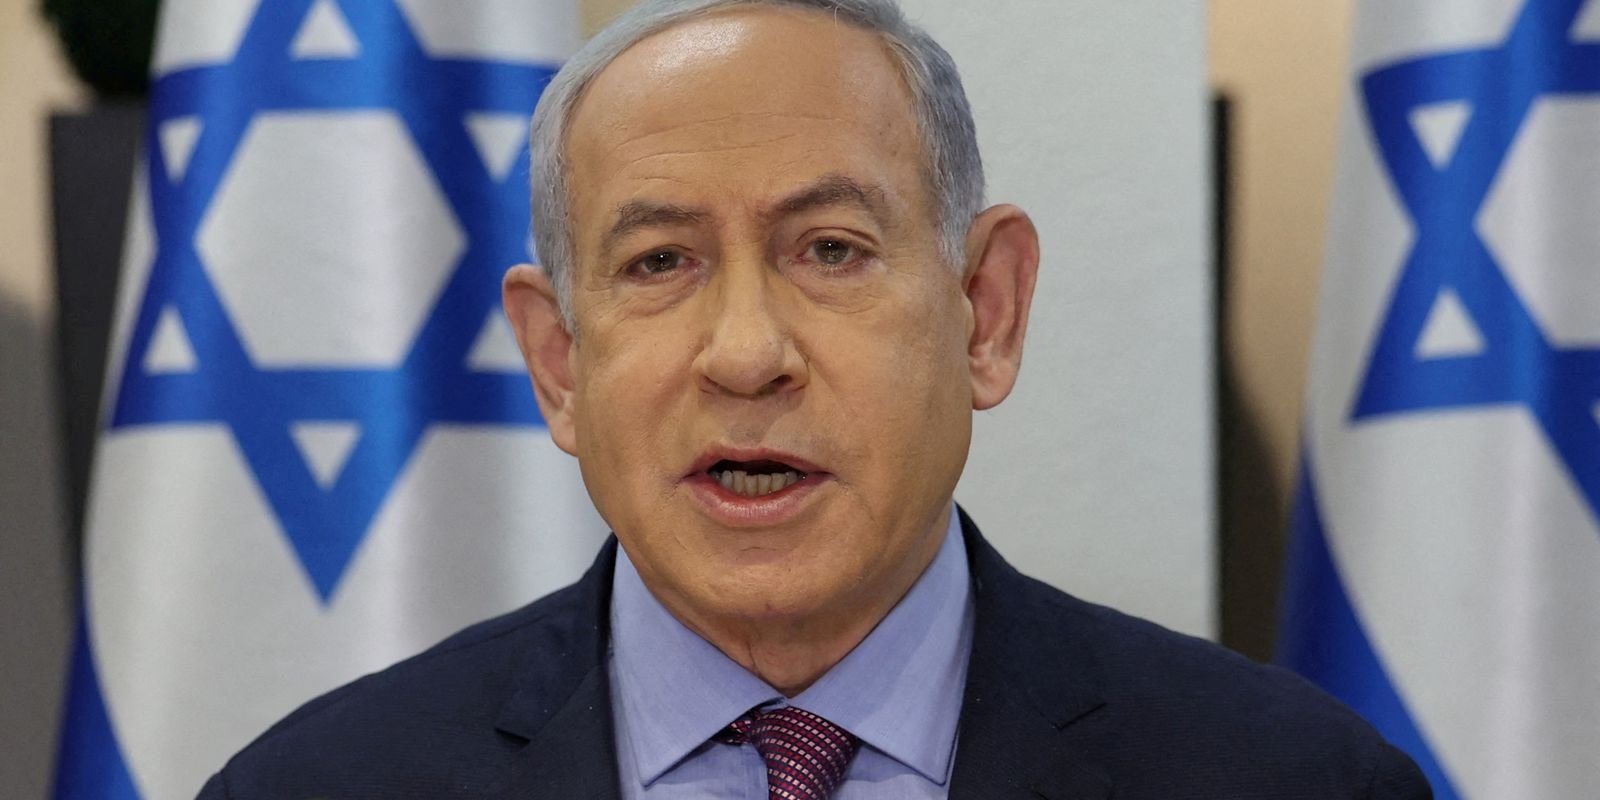 Ataque a acampamento em Rafah foi “acidente terrível”, diz Netanyahu